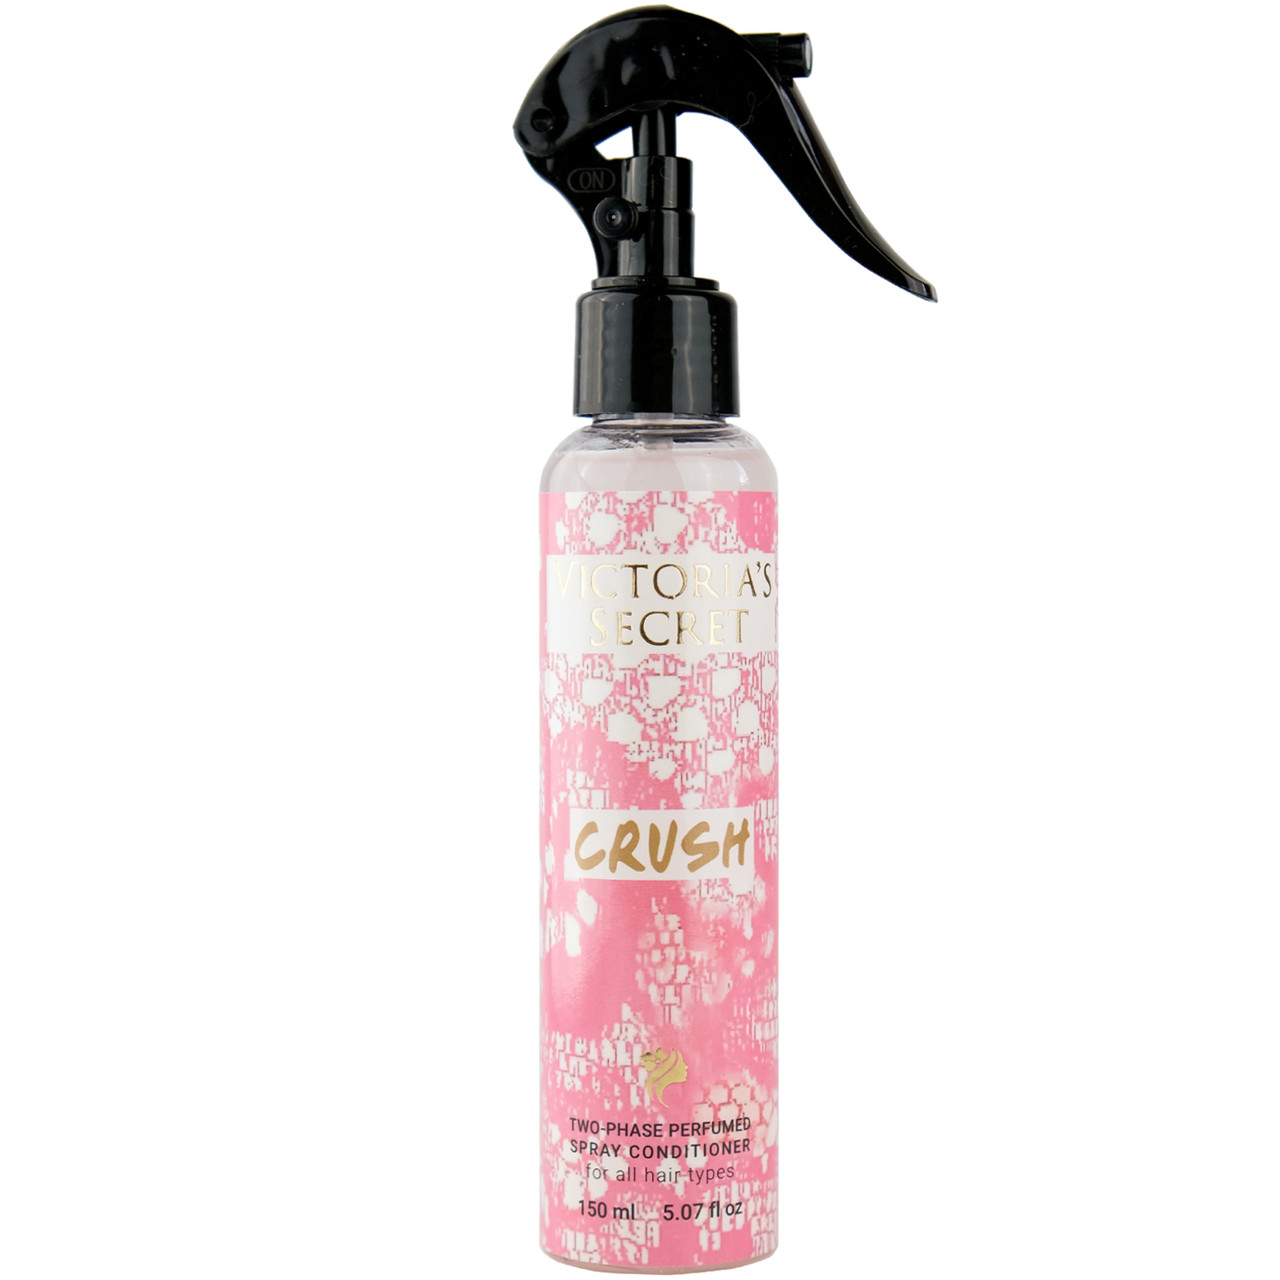 Двофазний парфумований спрей-кондиціонер для волосся Victoria's Secret Crush Brand Collection 150 мл